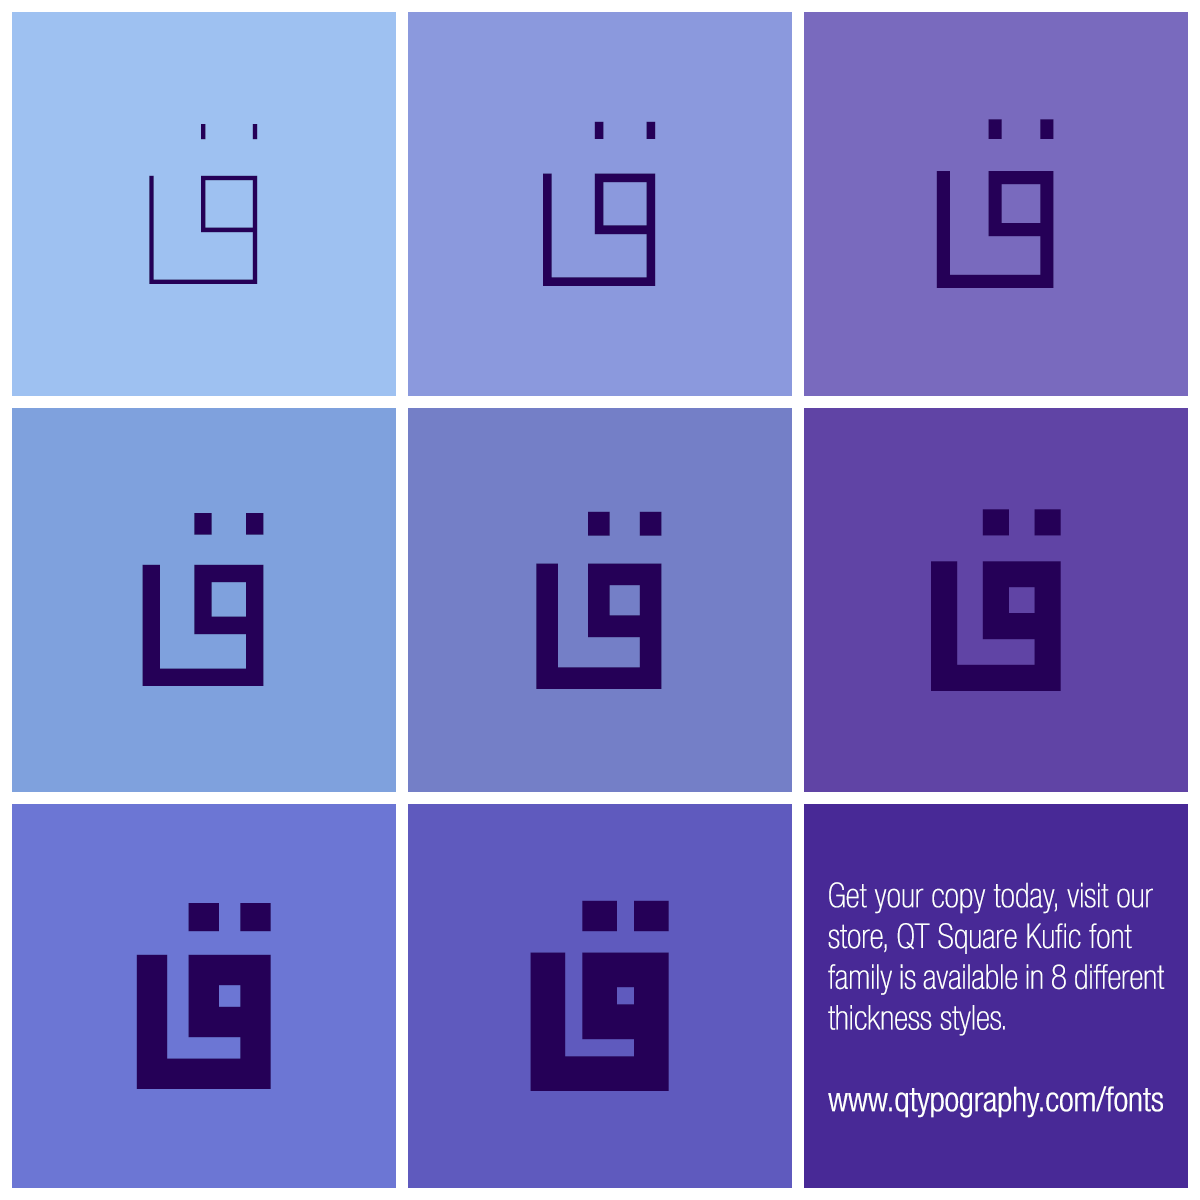 QT Square Kuufic Fonts